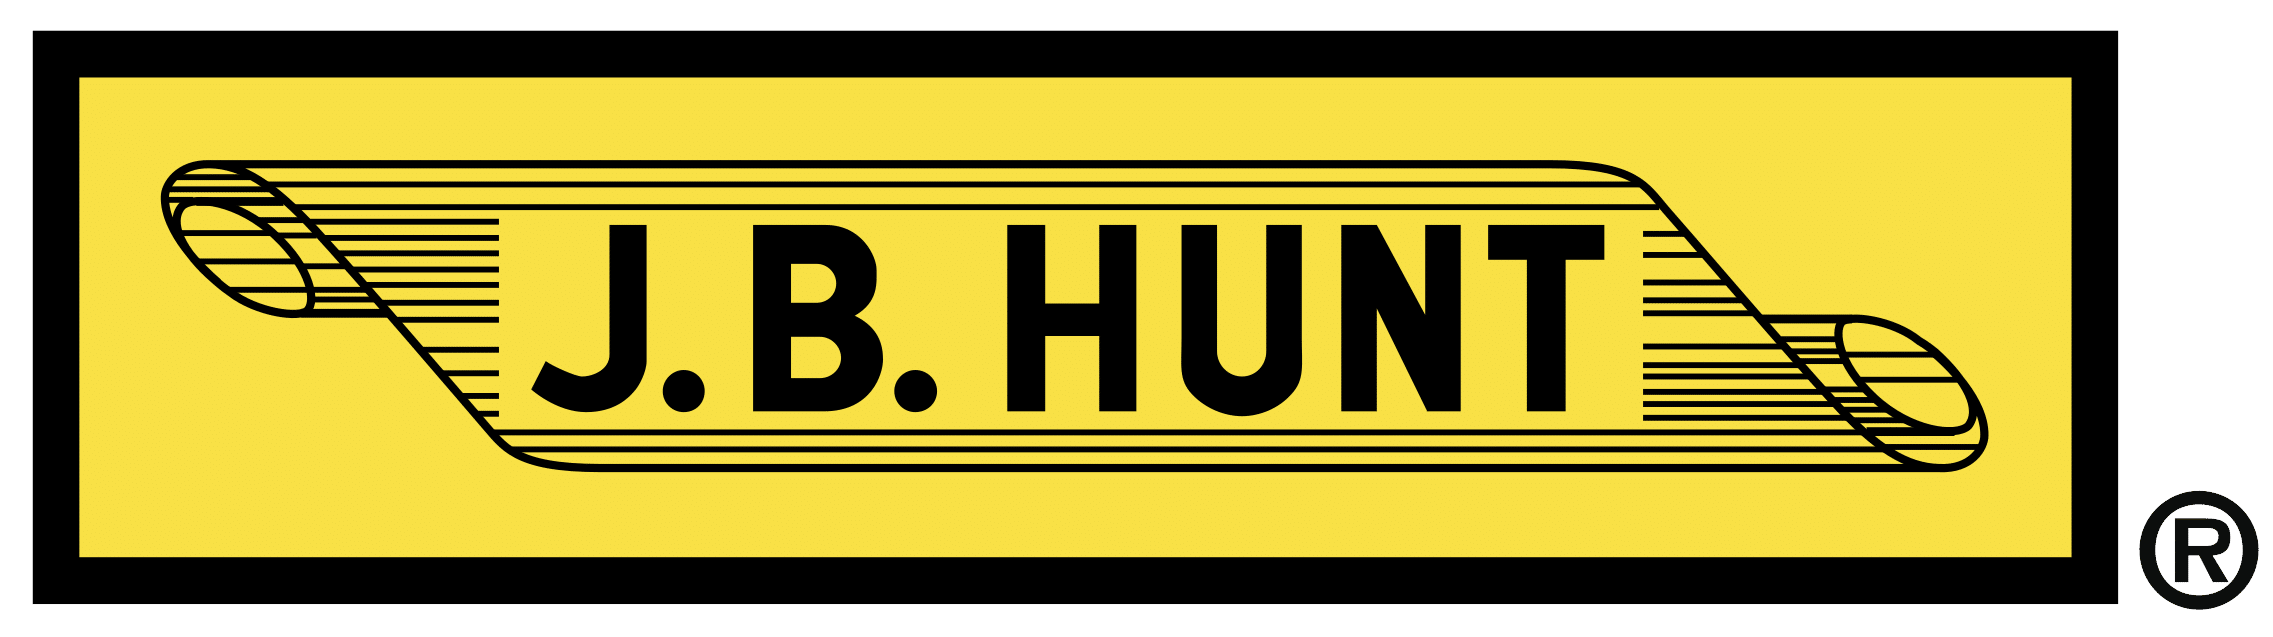 JB hunt logo